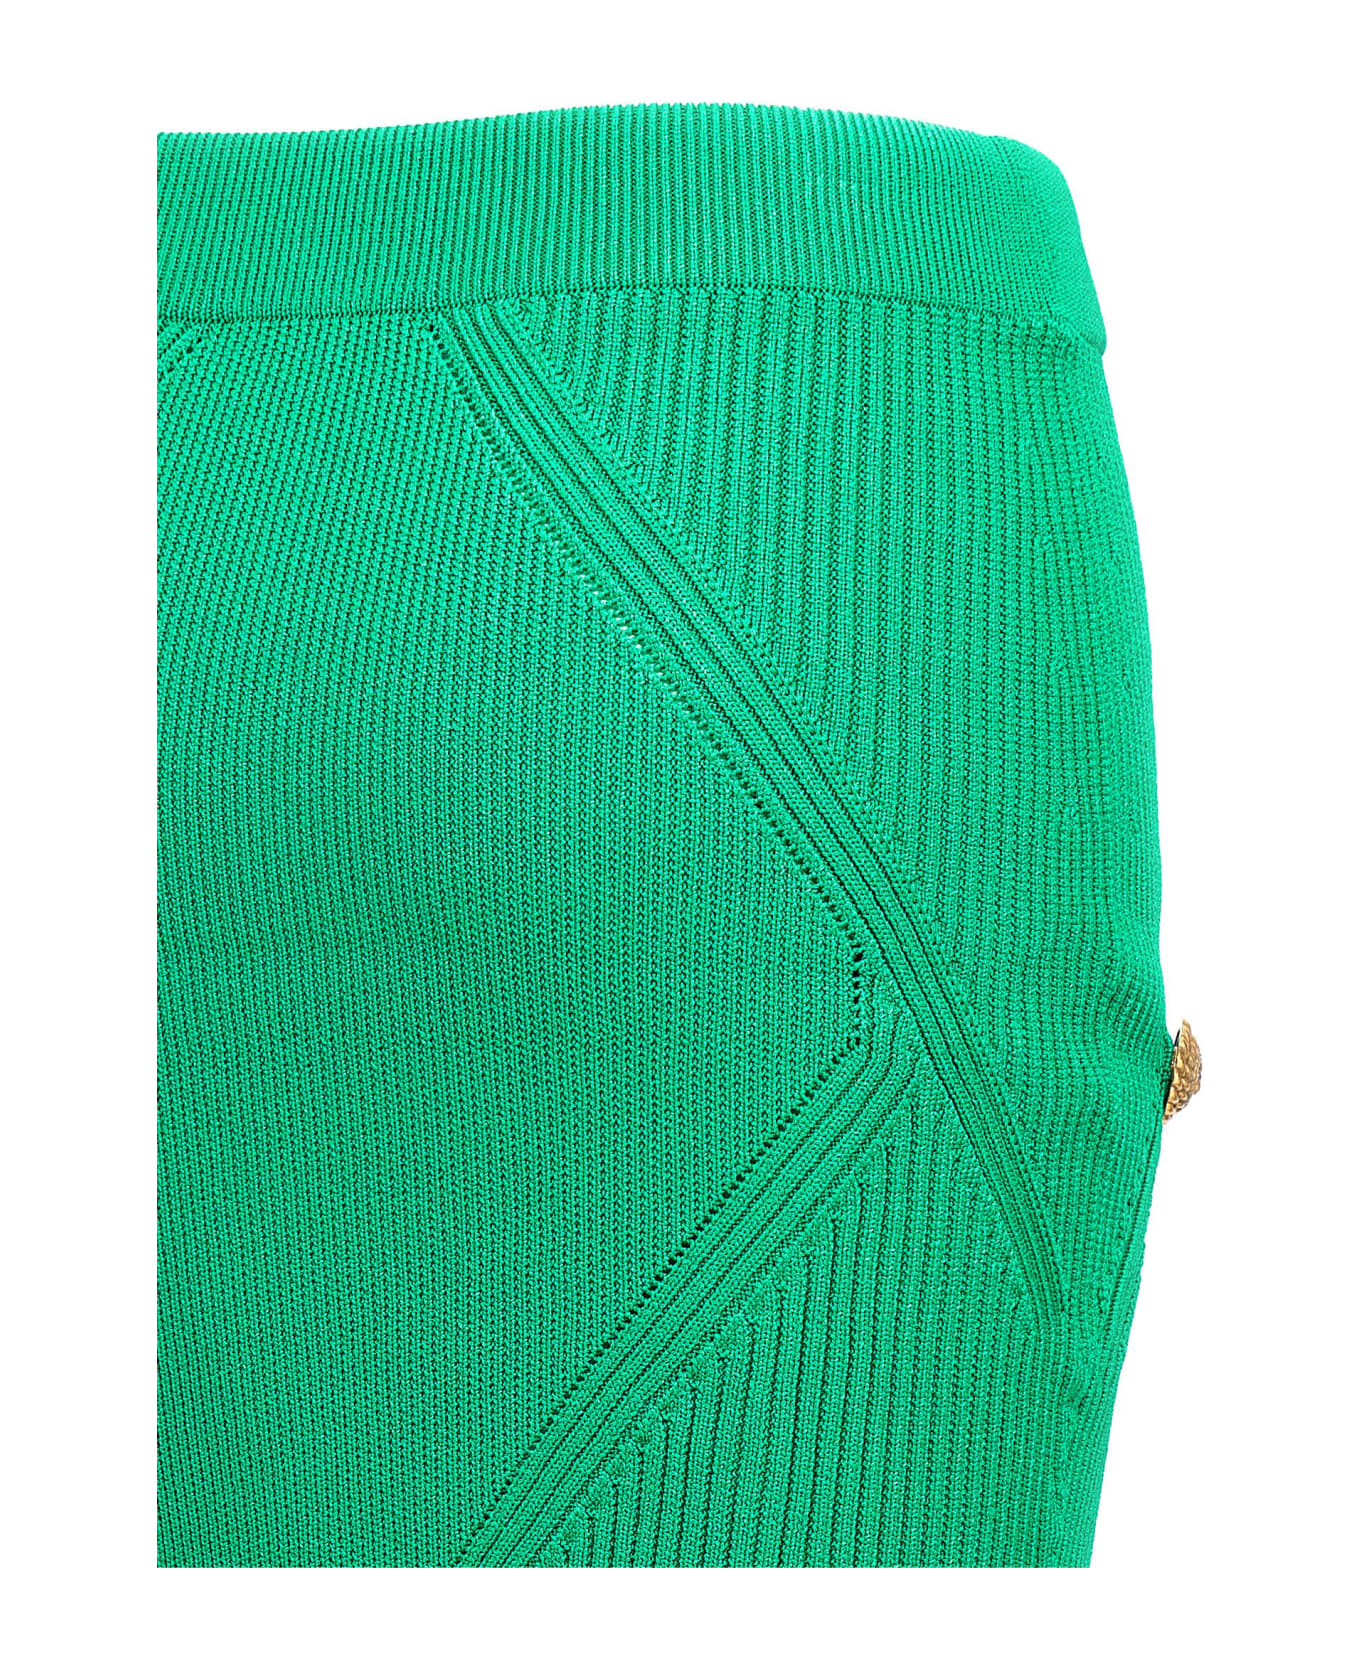 Balmain Knitted Skirt - Green スカート